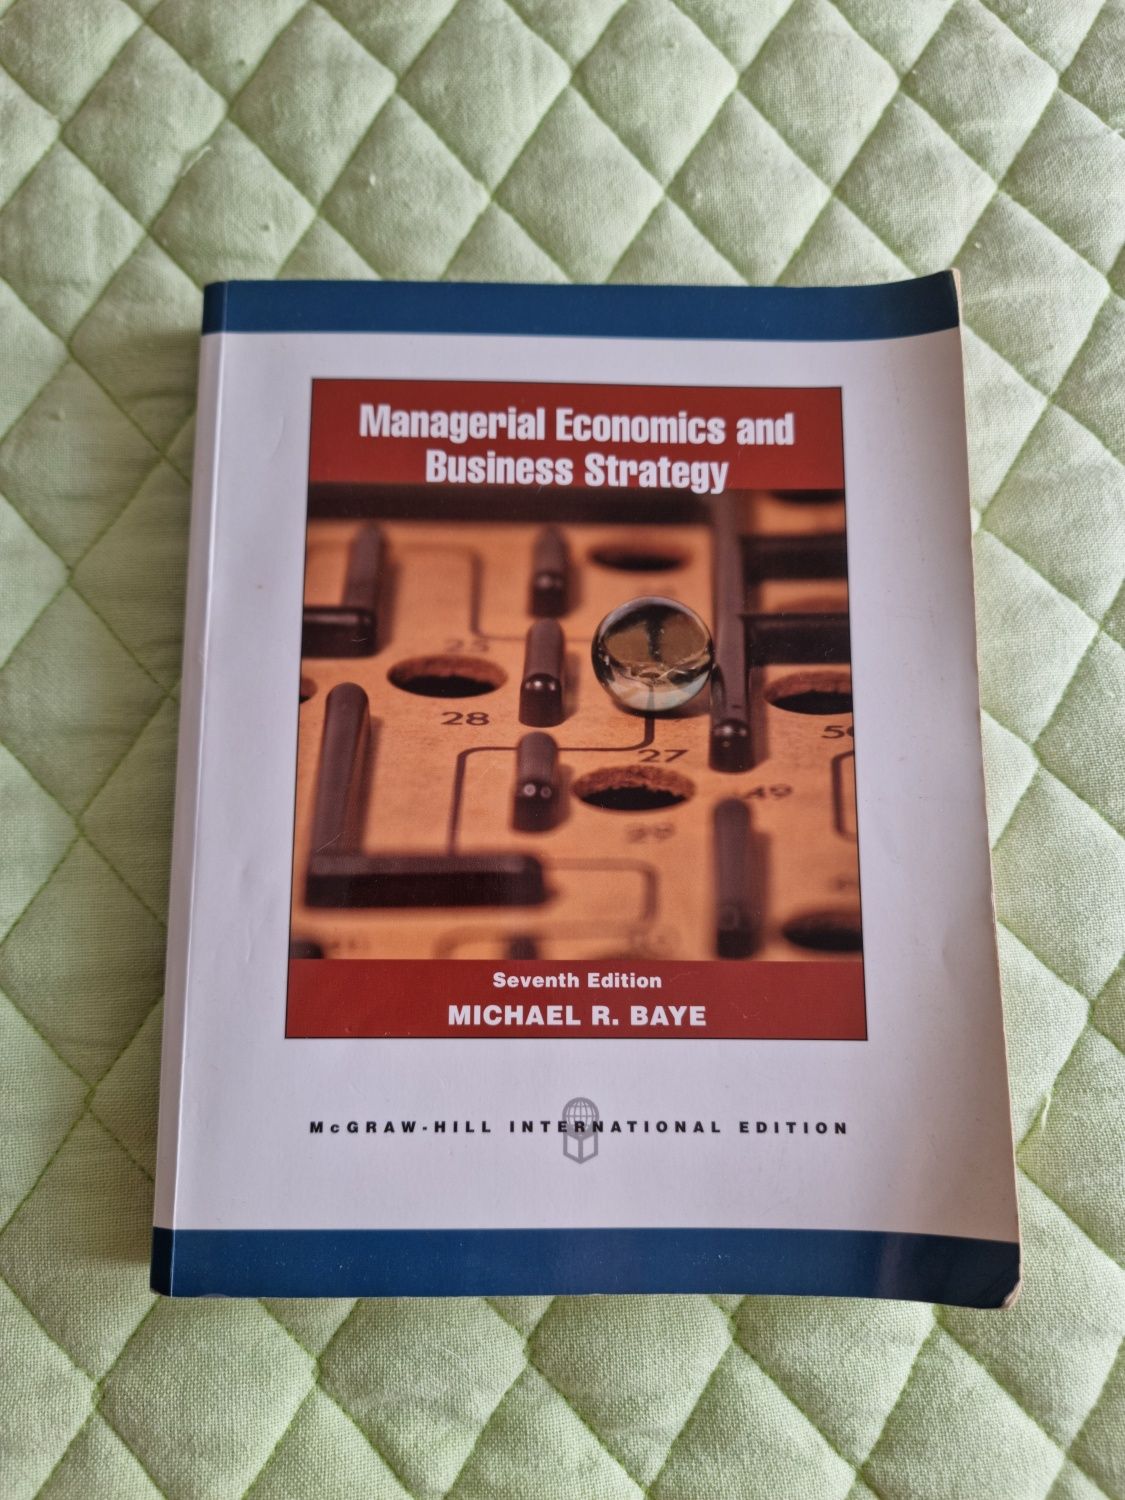 Livro Gestão : Managerial Economics and Business Strategy
Autores: Mic